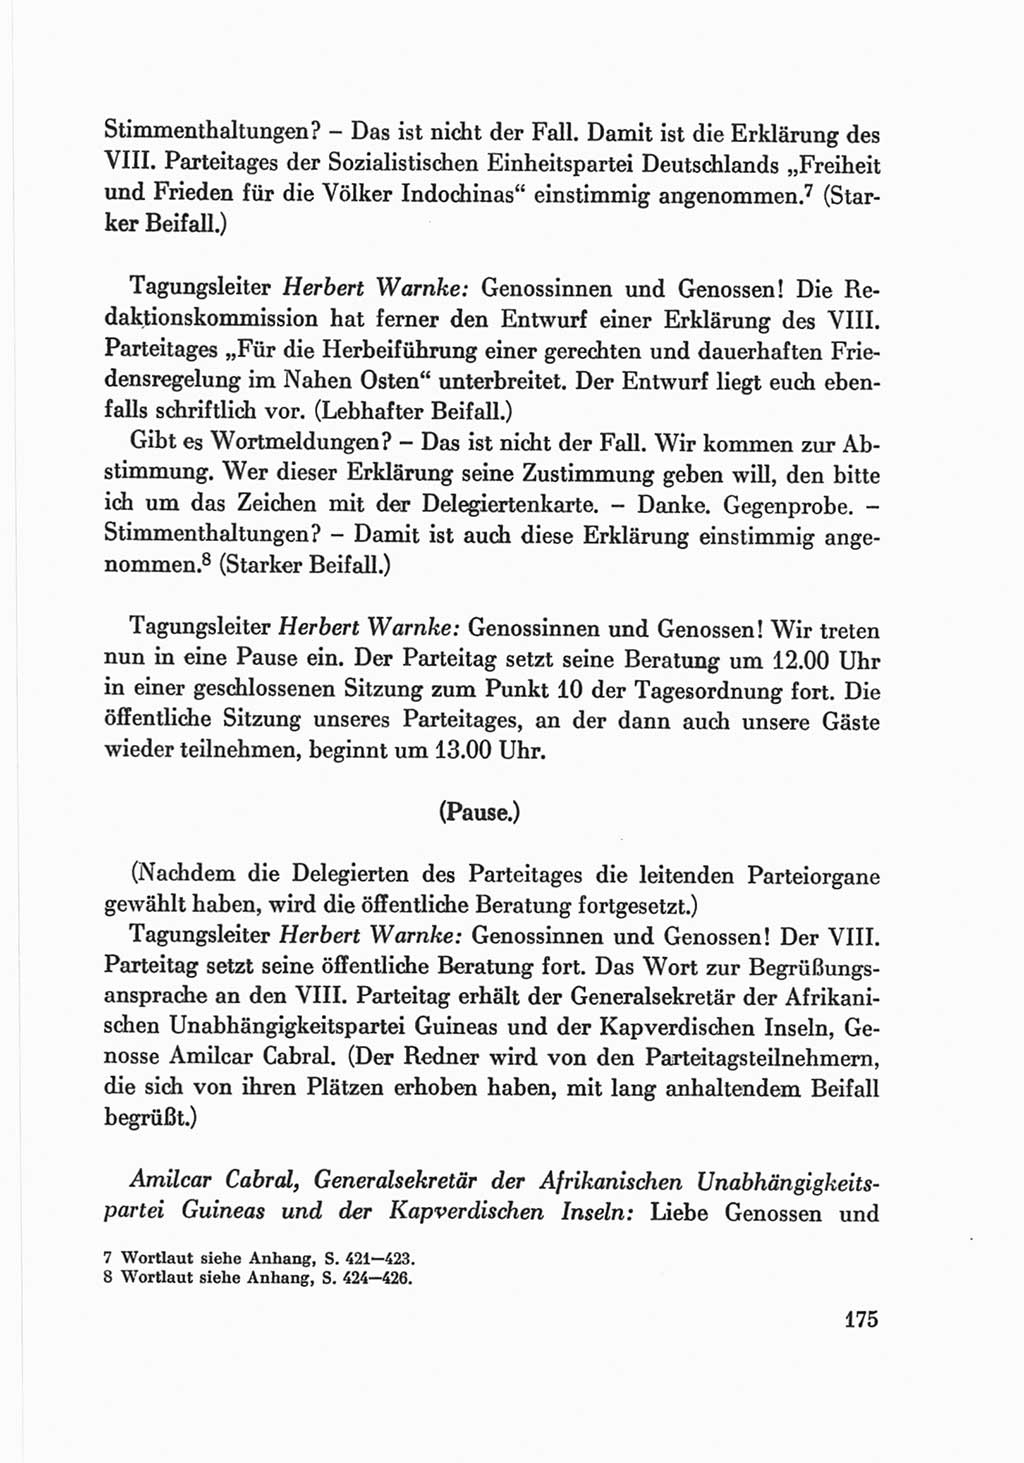 Protokoll der Verhandlungen des Ⅷ. Parteitages der Sozialistischen Einheitspartei Deutschlands (SED) [Deutsche Demokratische Republik (DDR)] 1971, Band 2, Seite 175 (Prot. Verh. Ⅷ. PT SED DDR 1971, Bd. 2, S. 175)